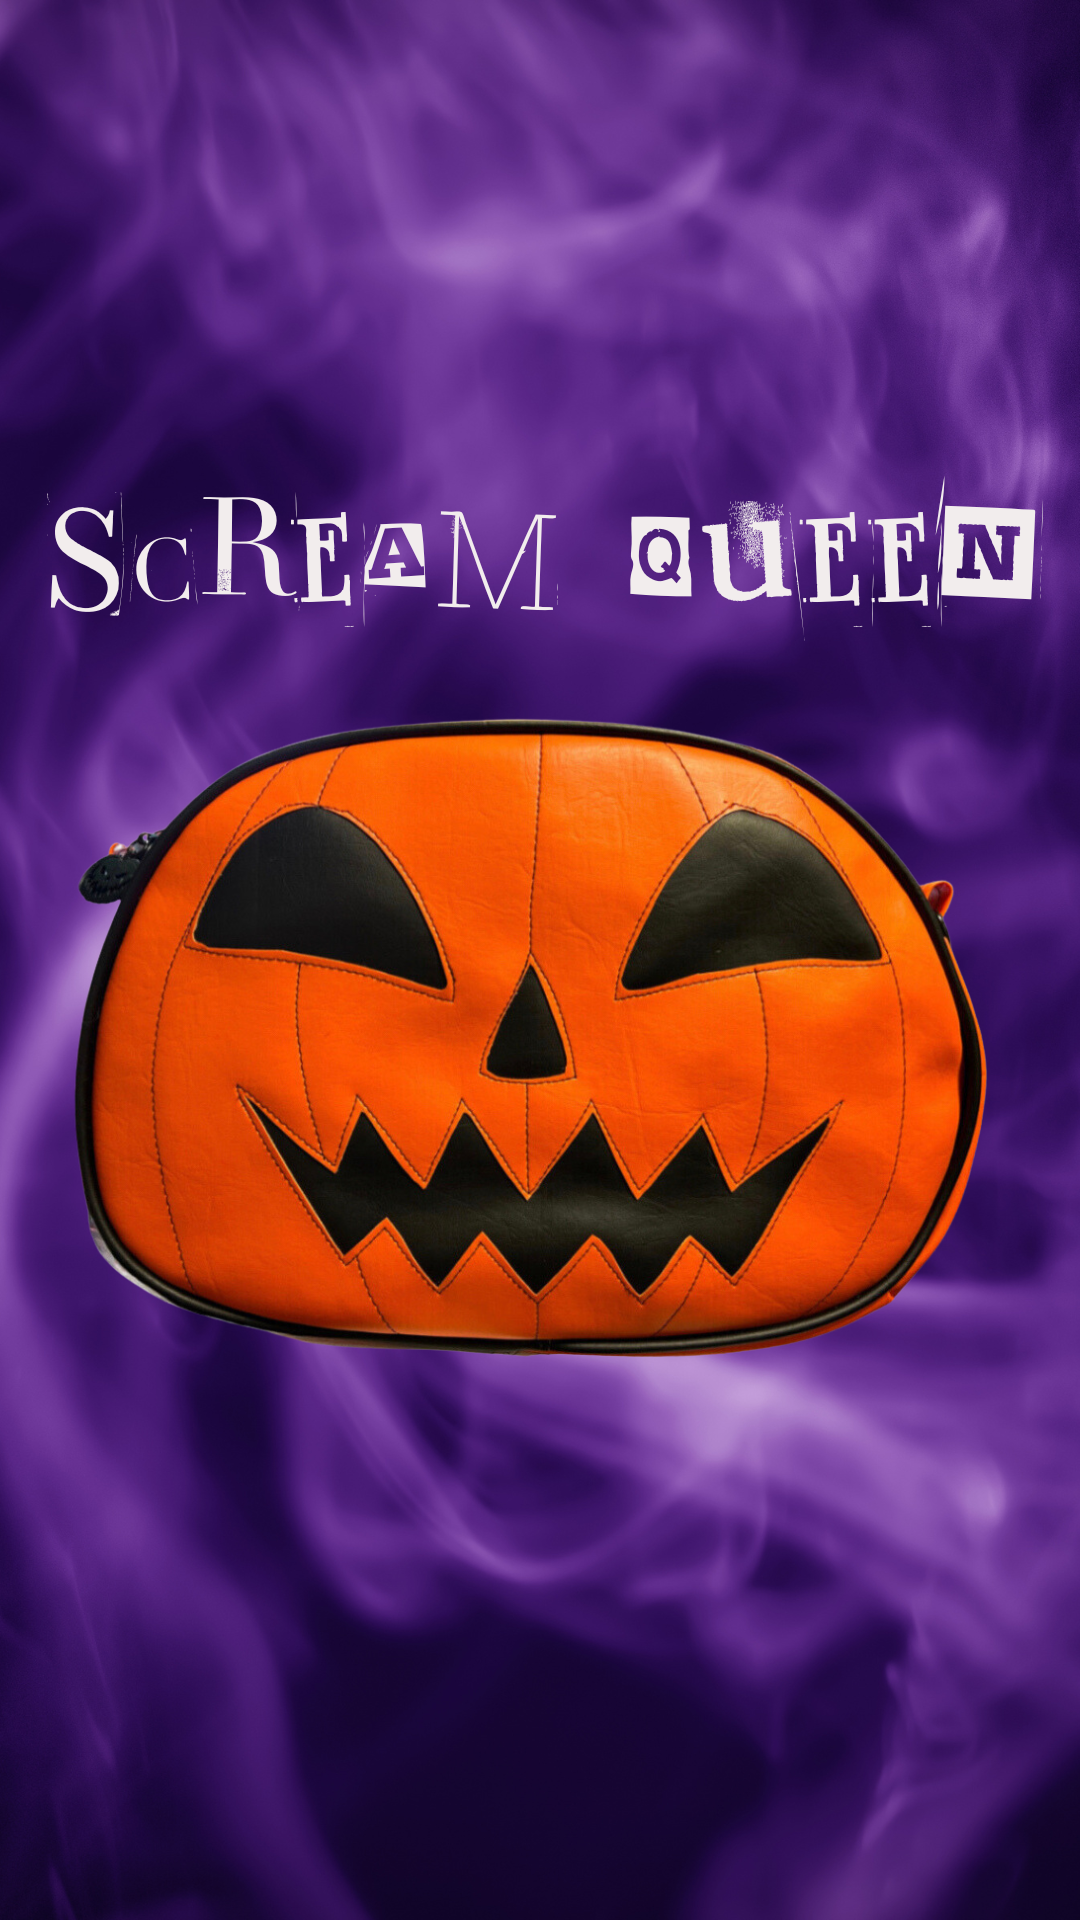 Scream Queen Pumpkin Bag